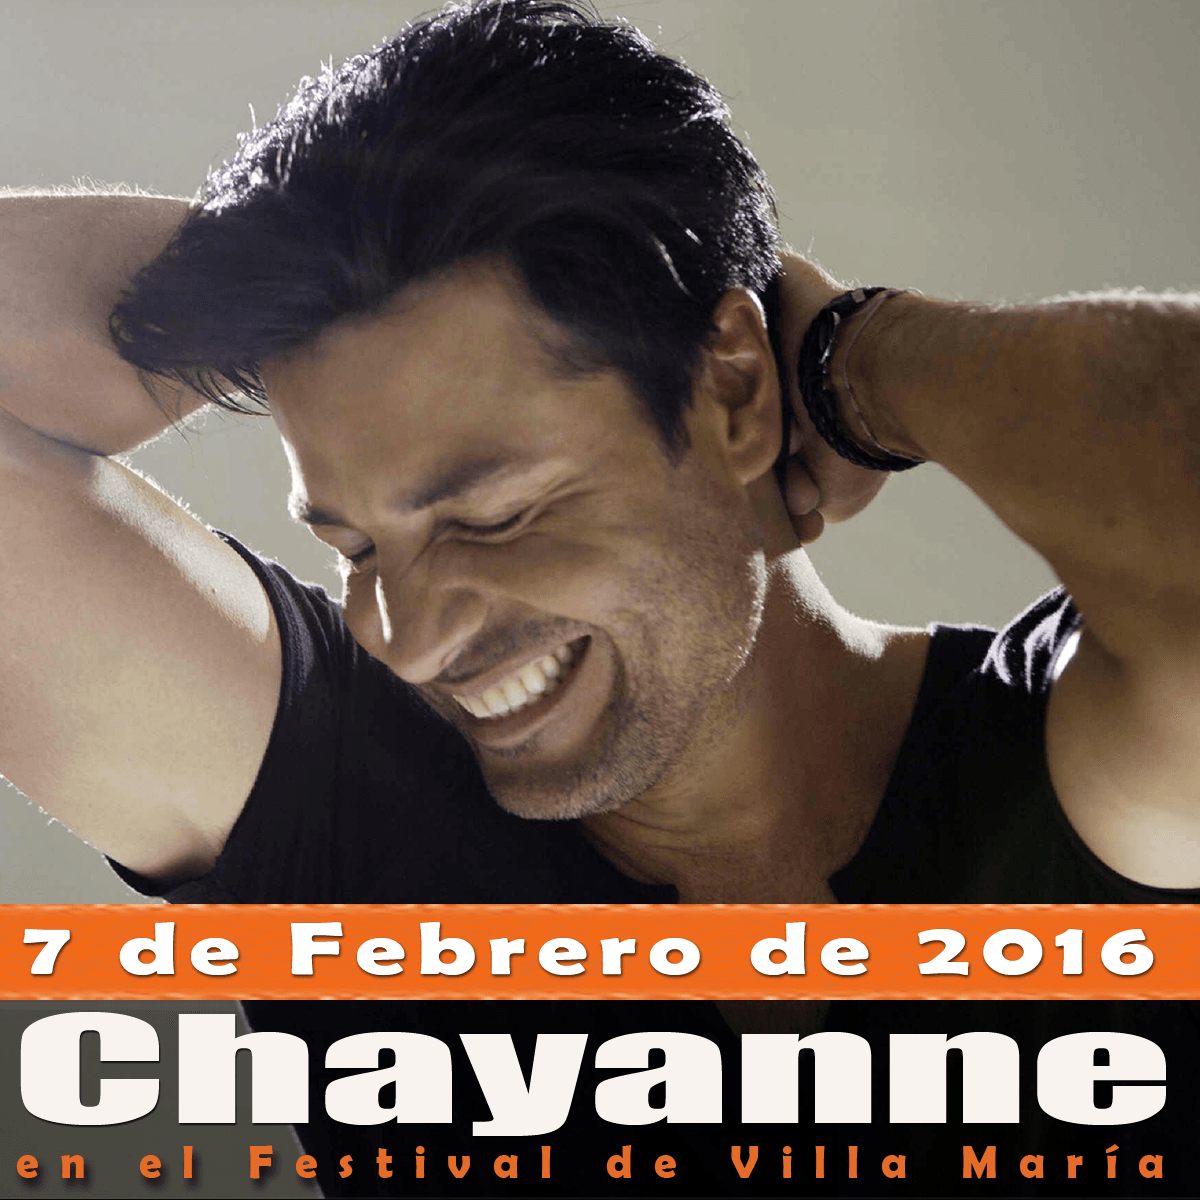 Chayanne en el Festival de Villa María 2016